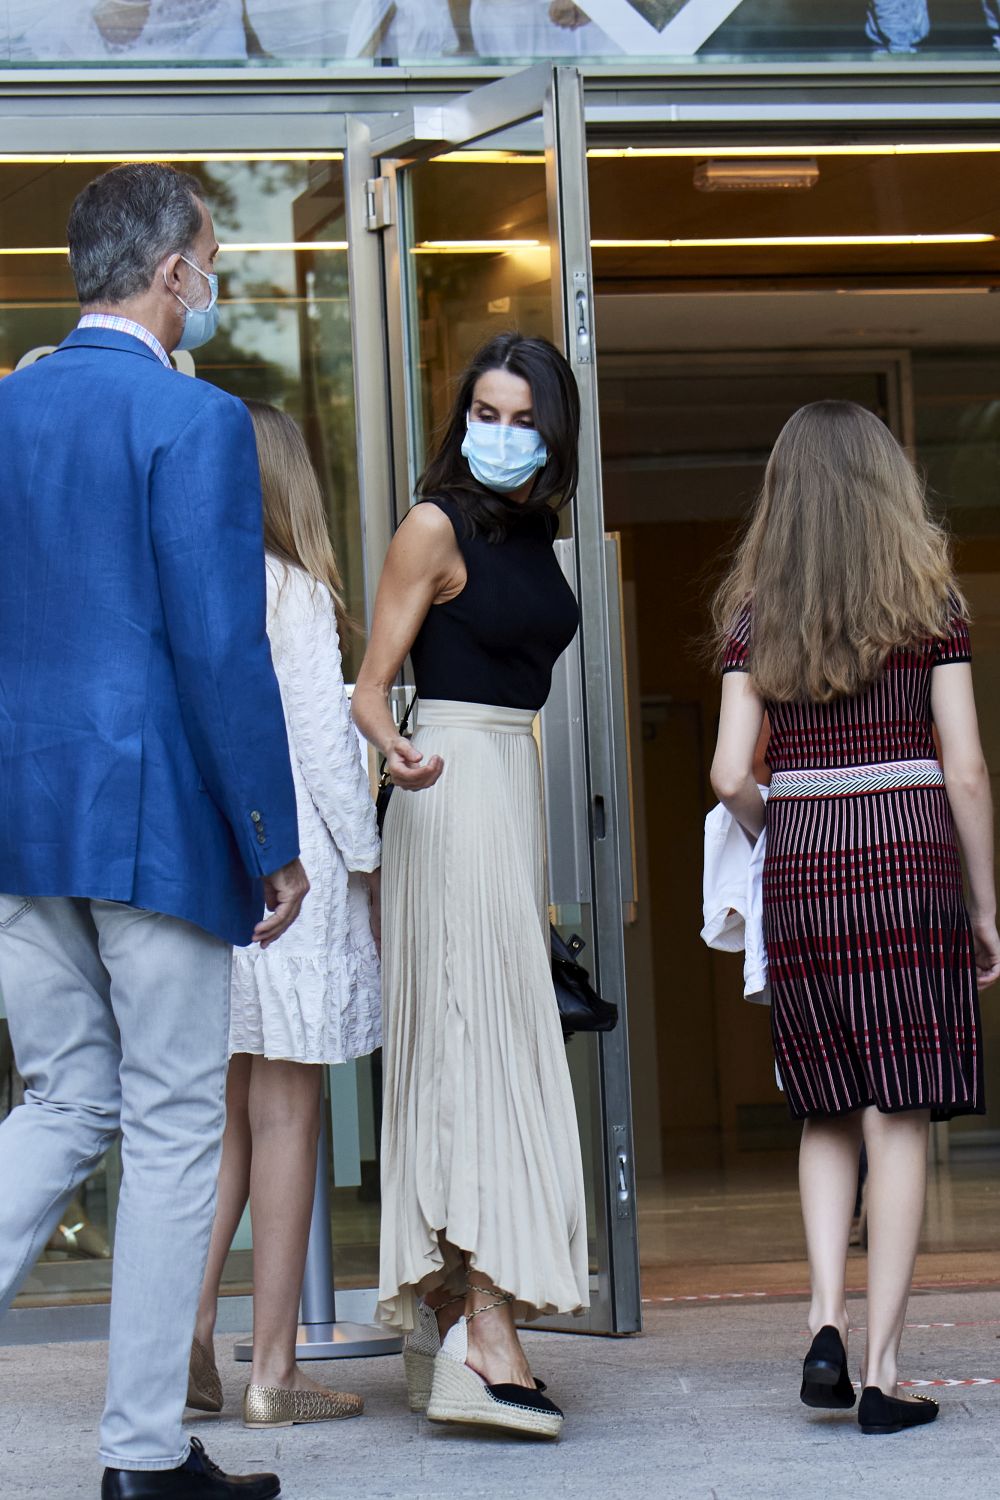 Испанското кралско семейство отиде на театър в условията на пандемия от коронавируса